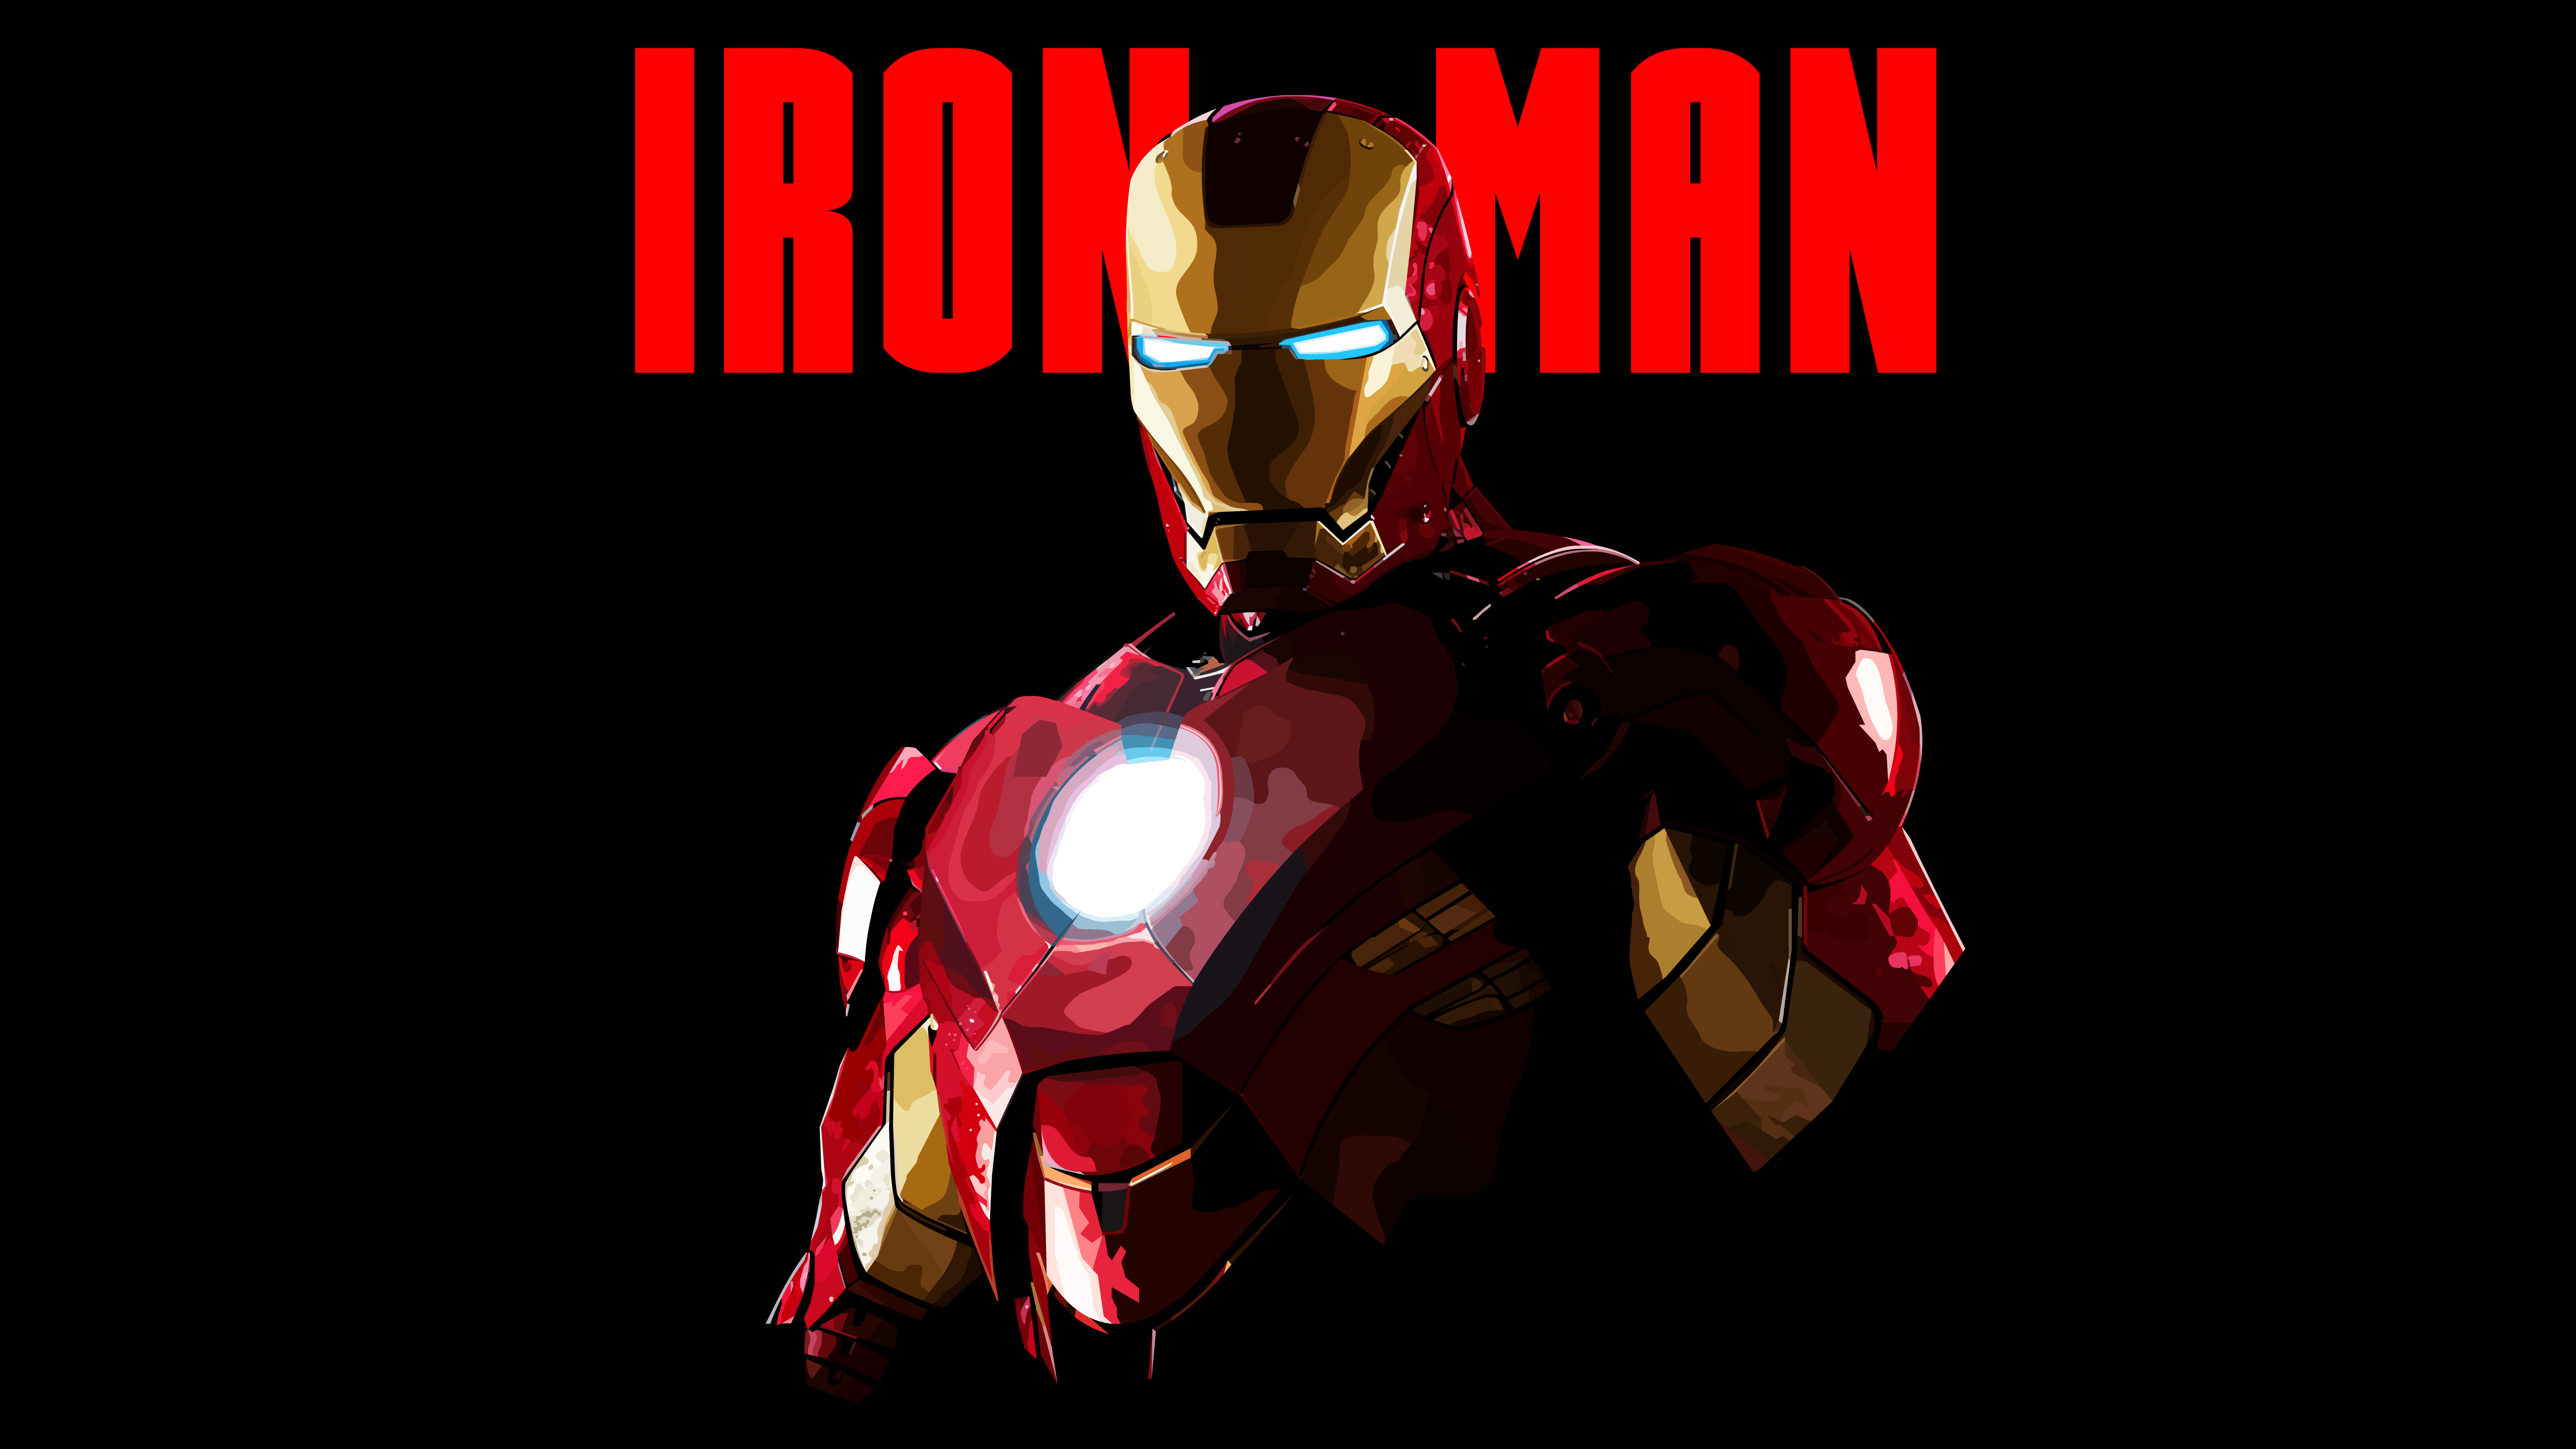 Wallpaper Iron Man, Artwork, Minimal, Low poly, Dark background